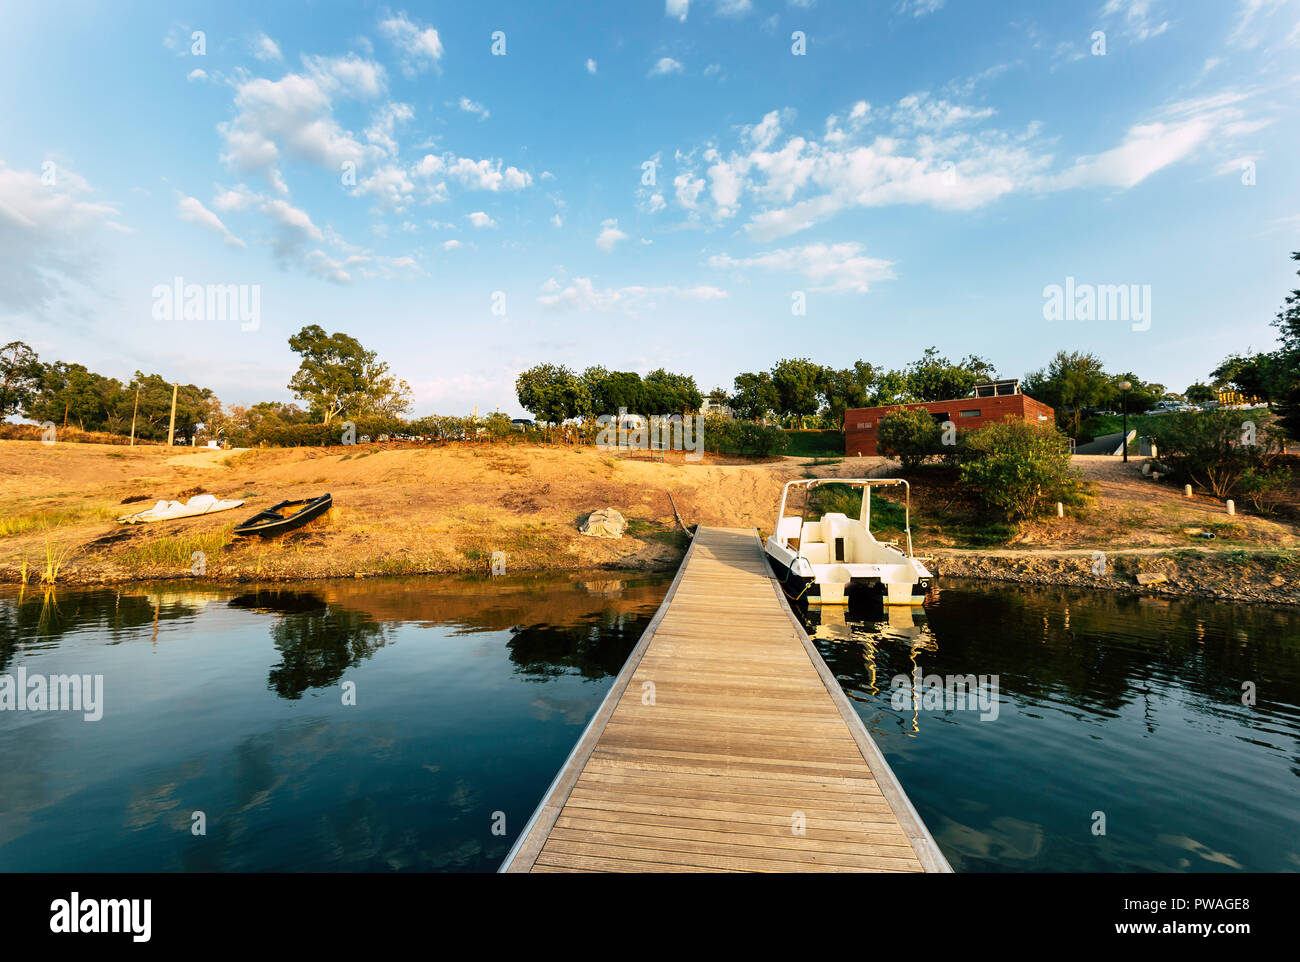 Pontile in legno con barca ormeggiata e riflessioni sul lago di acqua con un cielo blu con nuvole in background Foto Stock